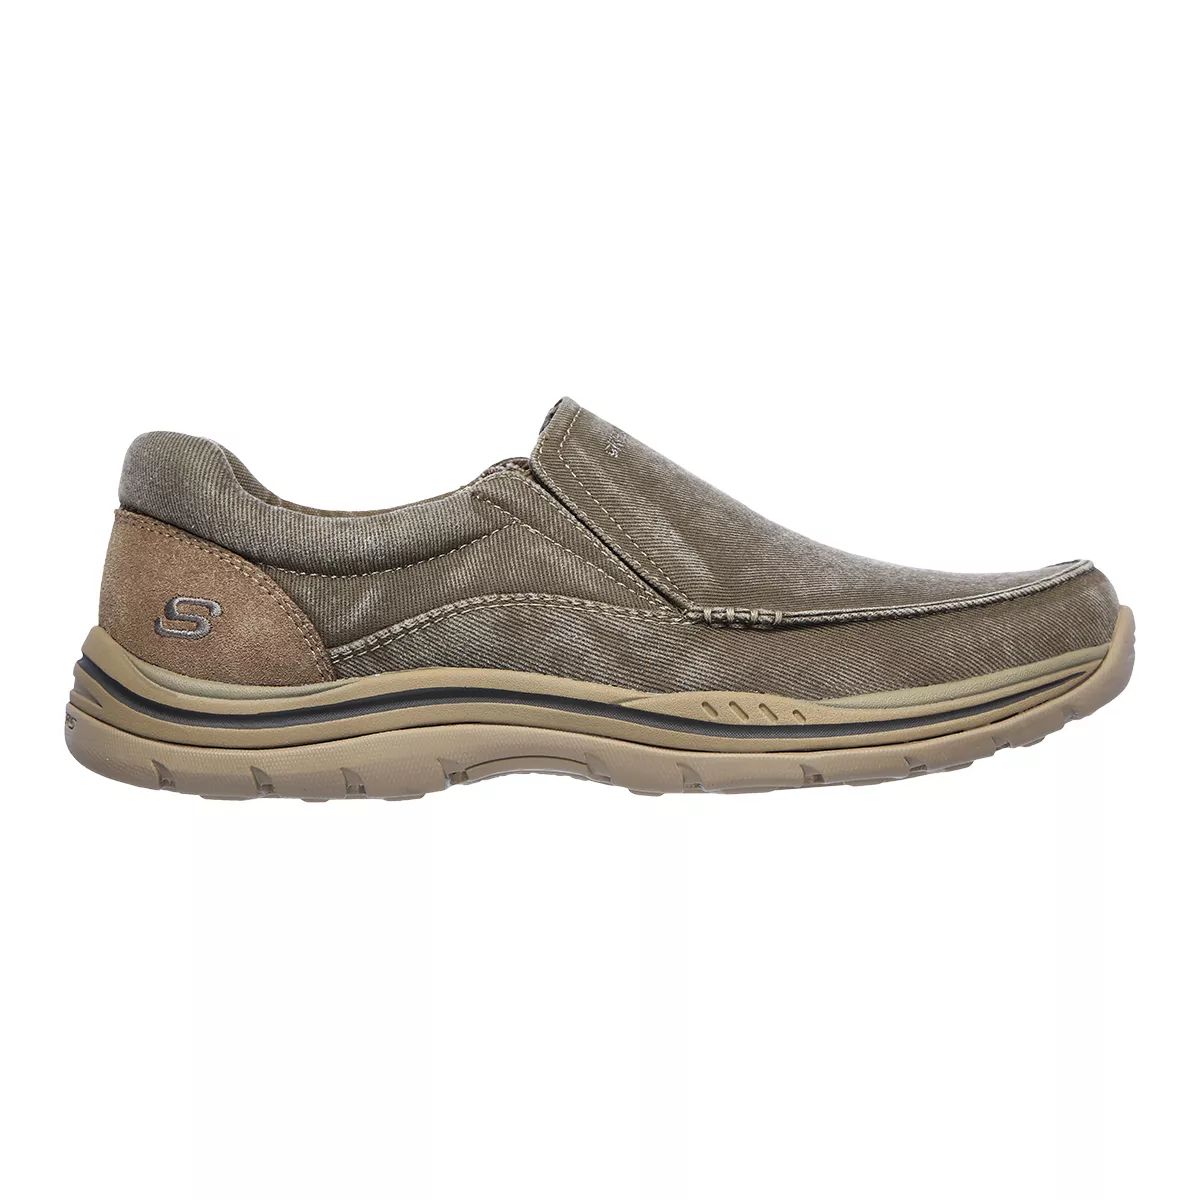 Skechers Men's Expected Avillo Shoes  Slip On Casual